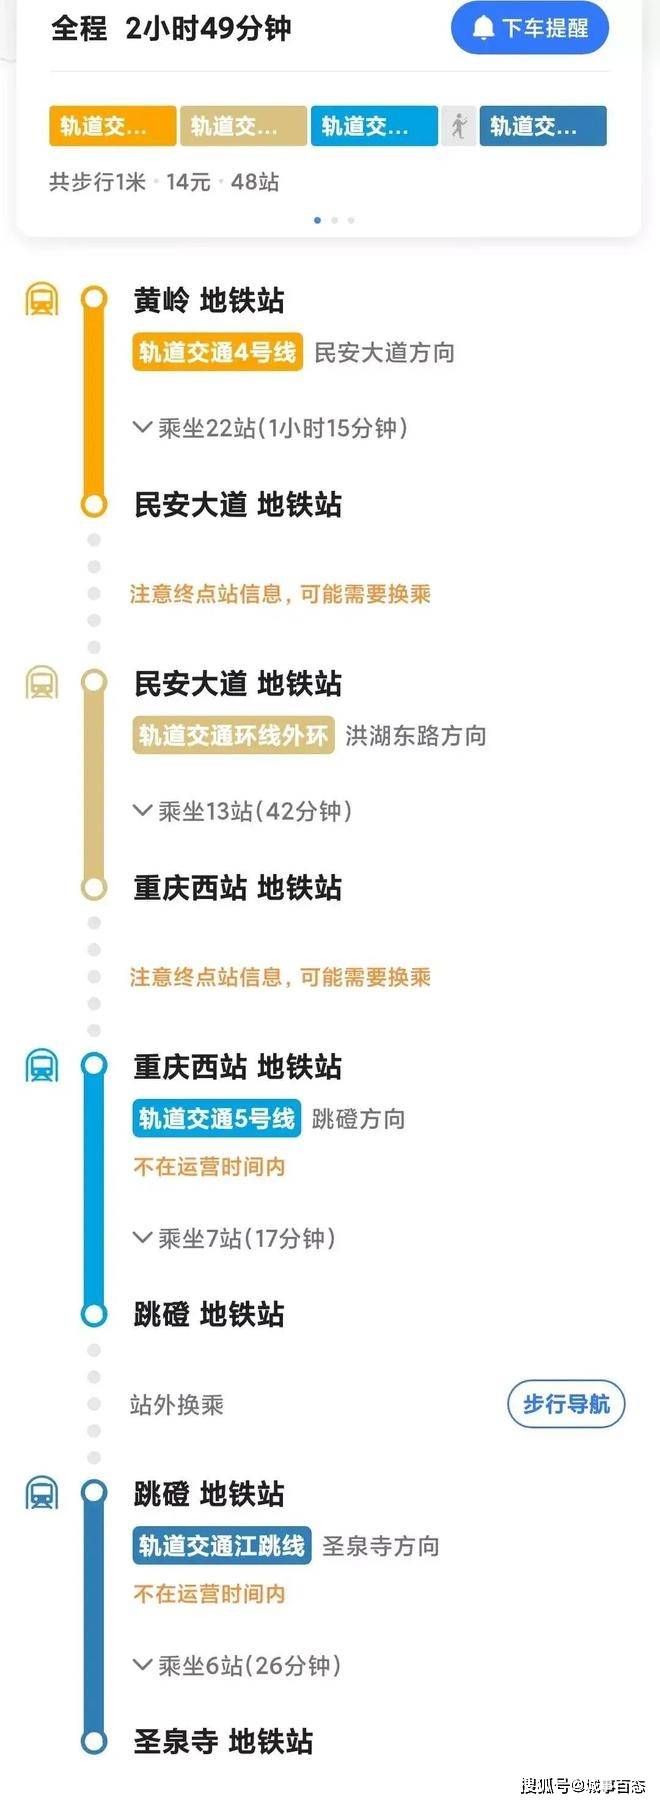 重庆：请叫我超大城市，从南到北地铁需要3小时，票价14元！